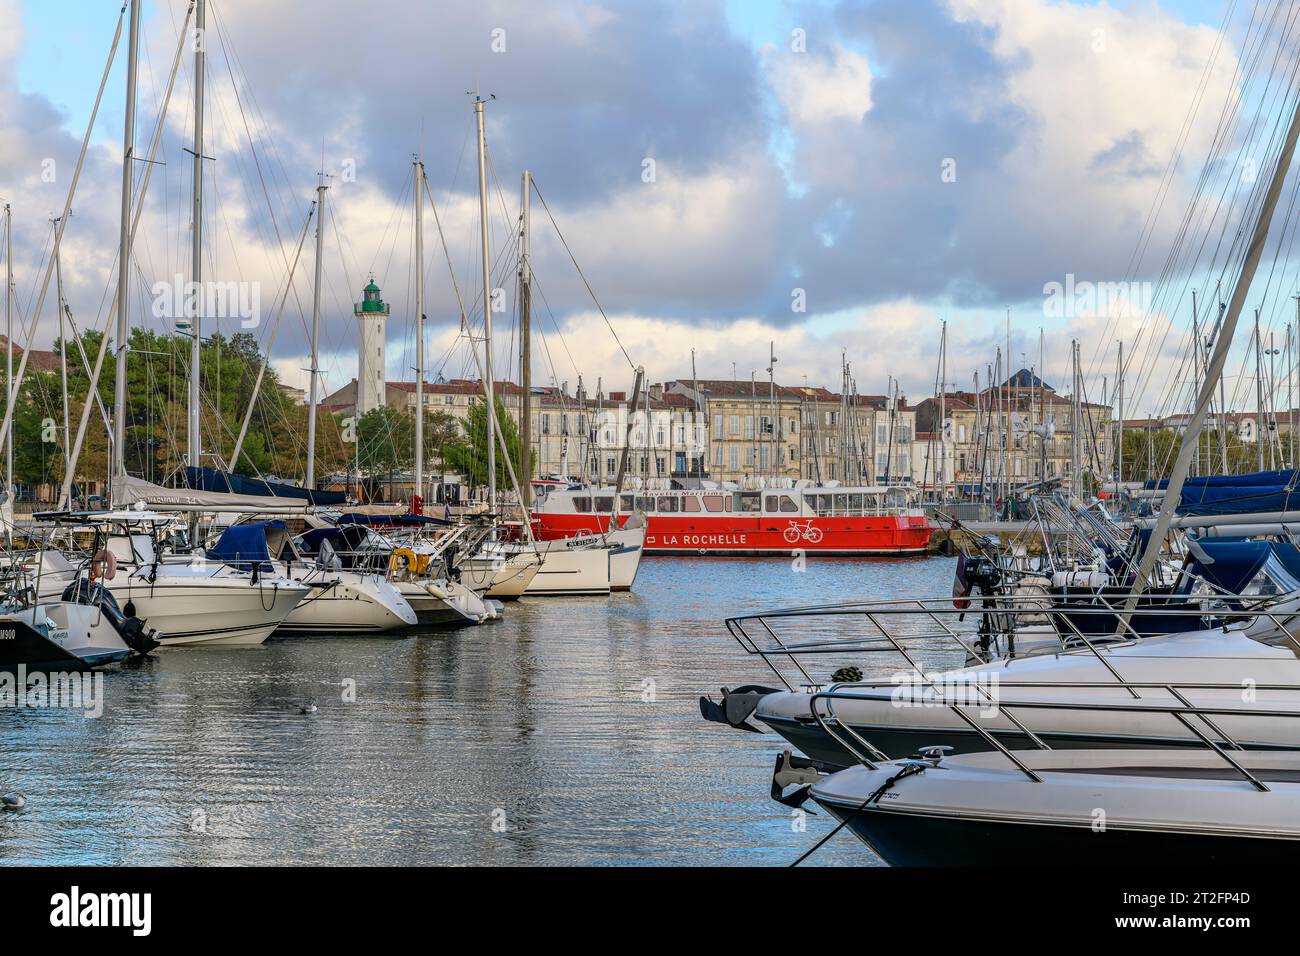 Il traghetto rosso per l'île de Ré alla luce della sera nella splendida cittadina di mare di la Rochelle, sulla costa occidentale della Francia, con yacht e barche da pesca. Foto Stock